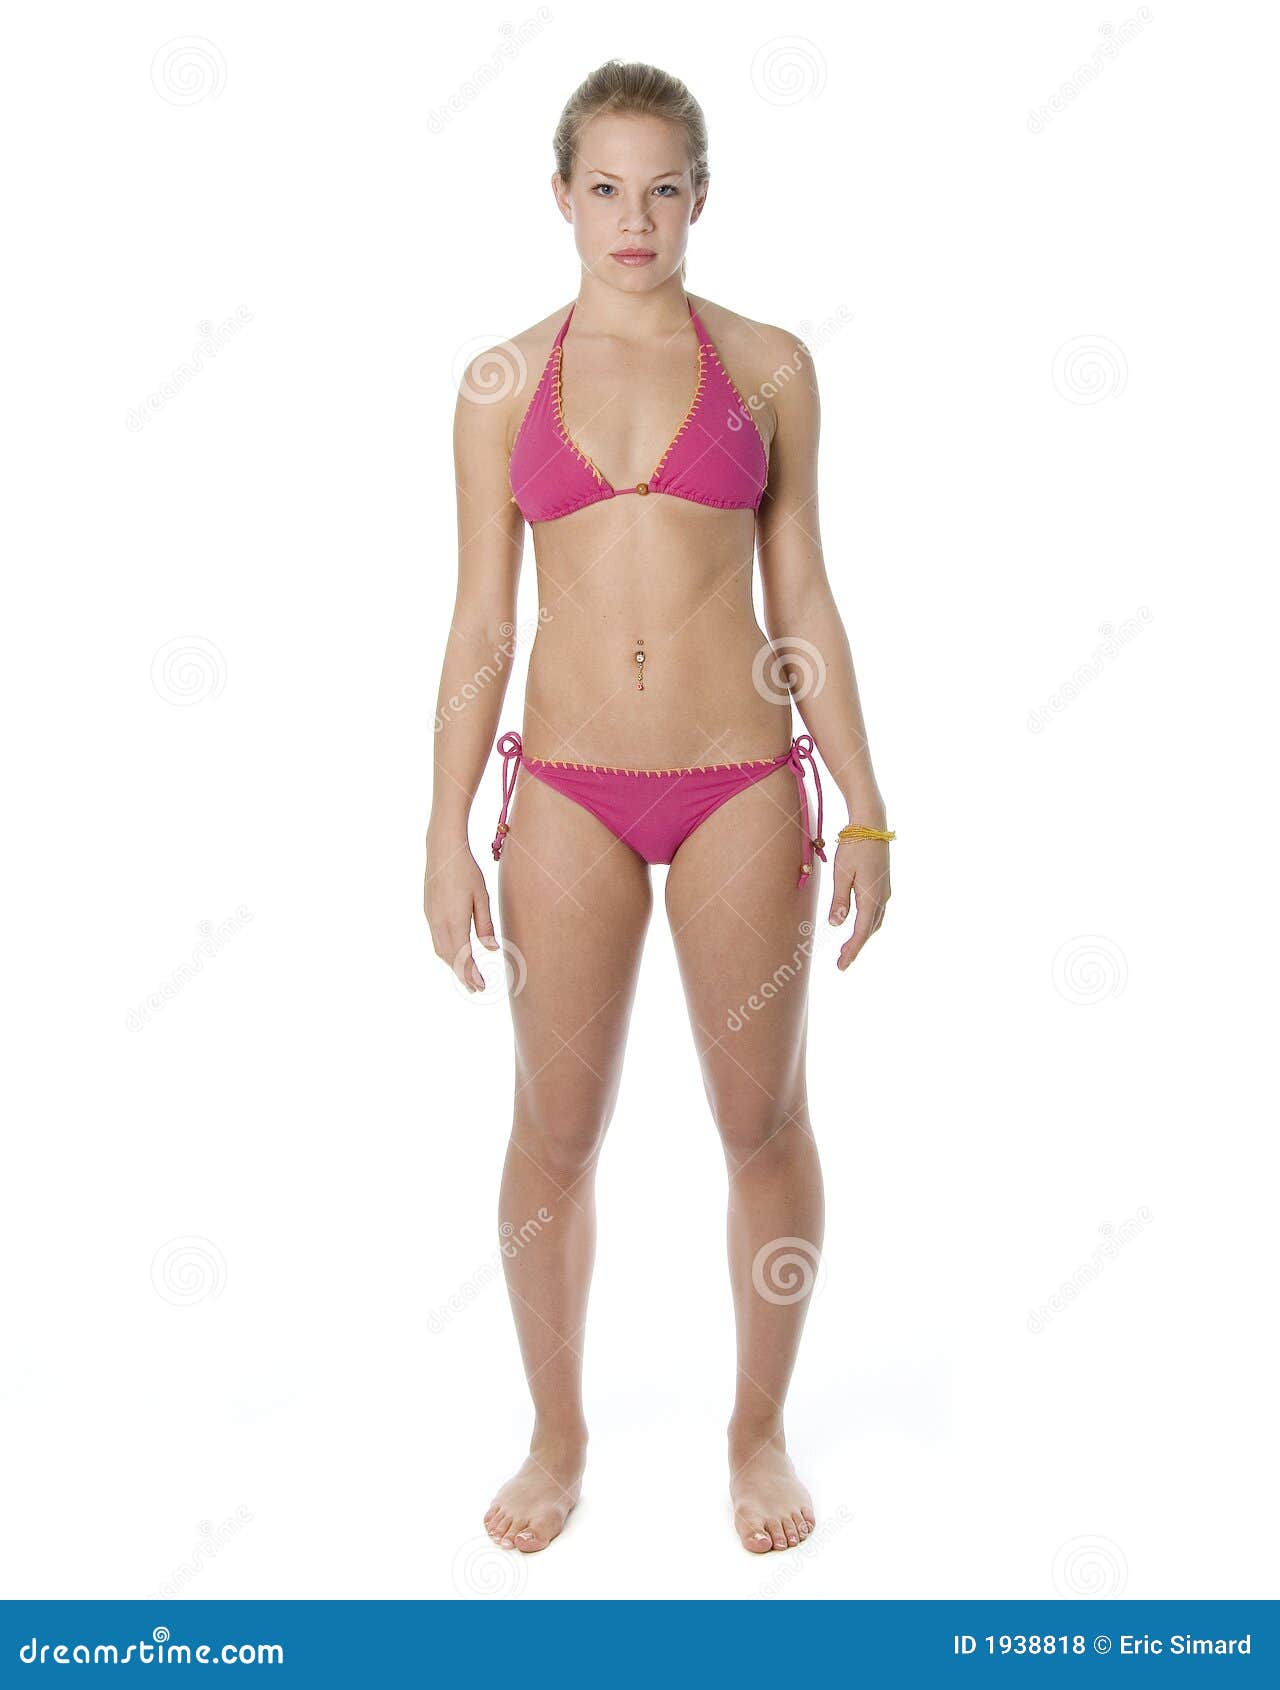 bikini young teen picture model